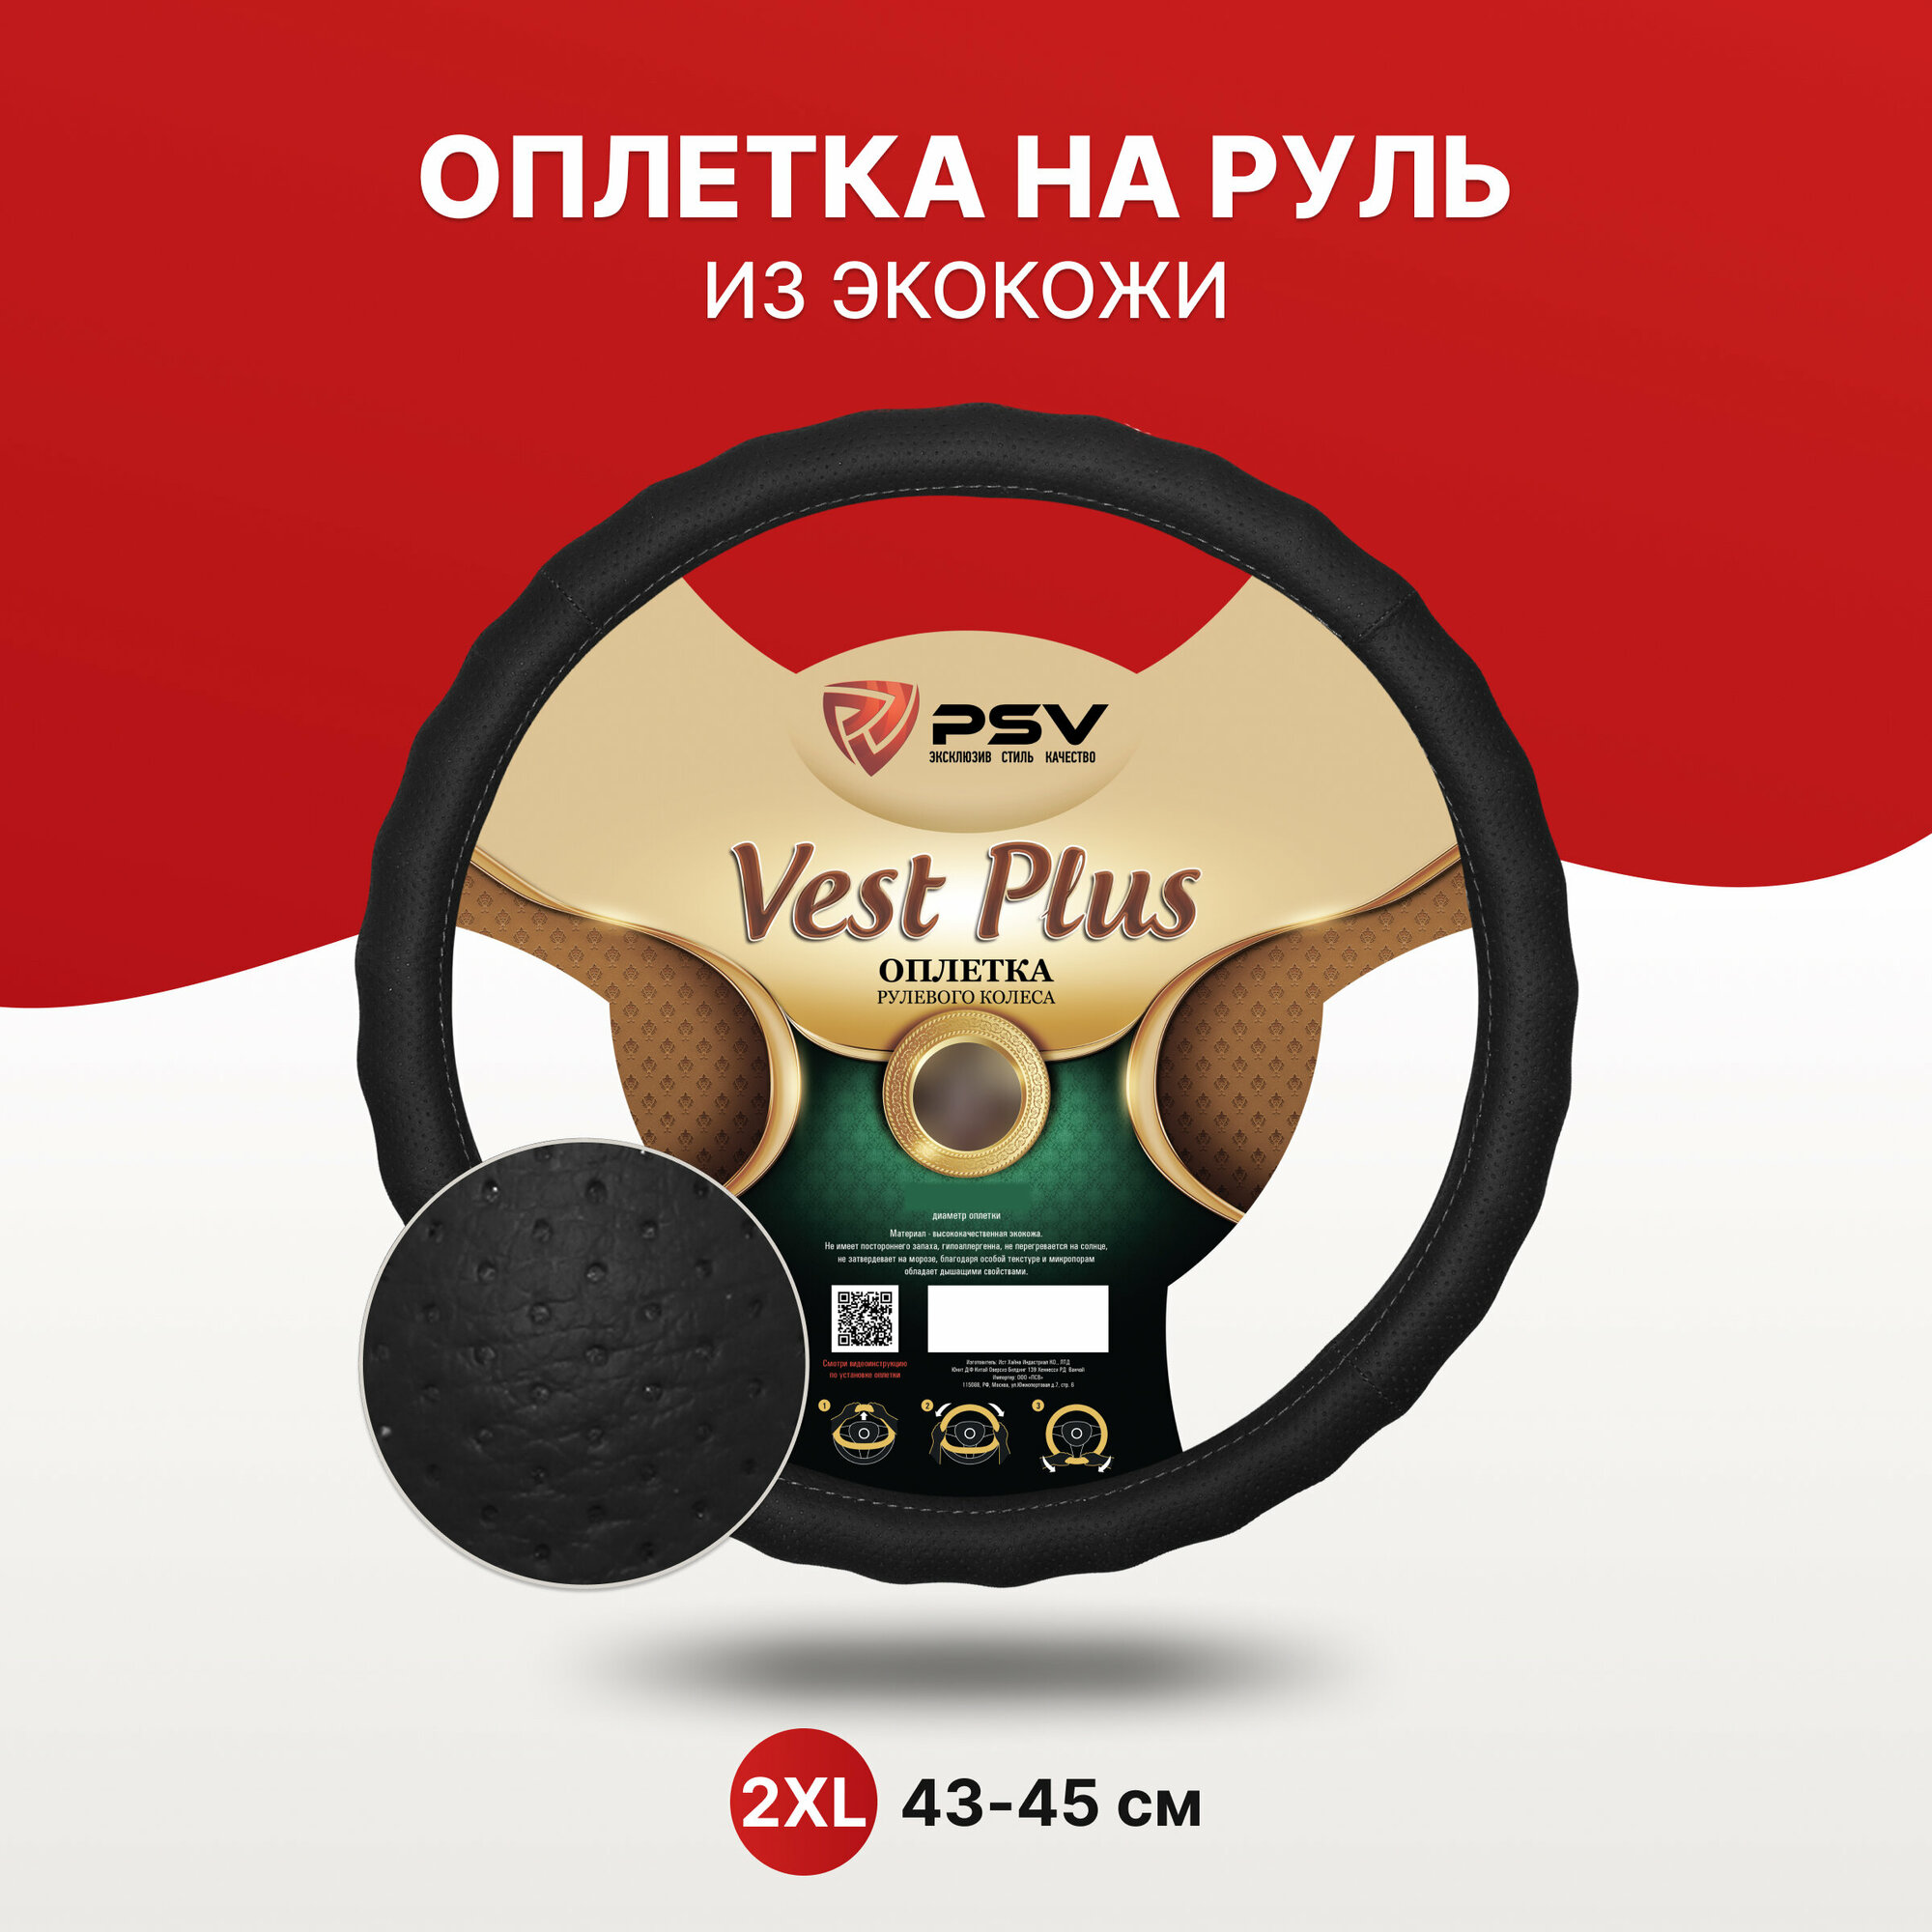 Оплётка на руль PSV VEST (EXTRA) PLUS Fiber (Черный) 2XL 43-45 см экокожа 136154